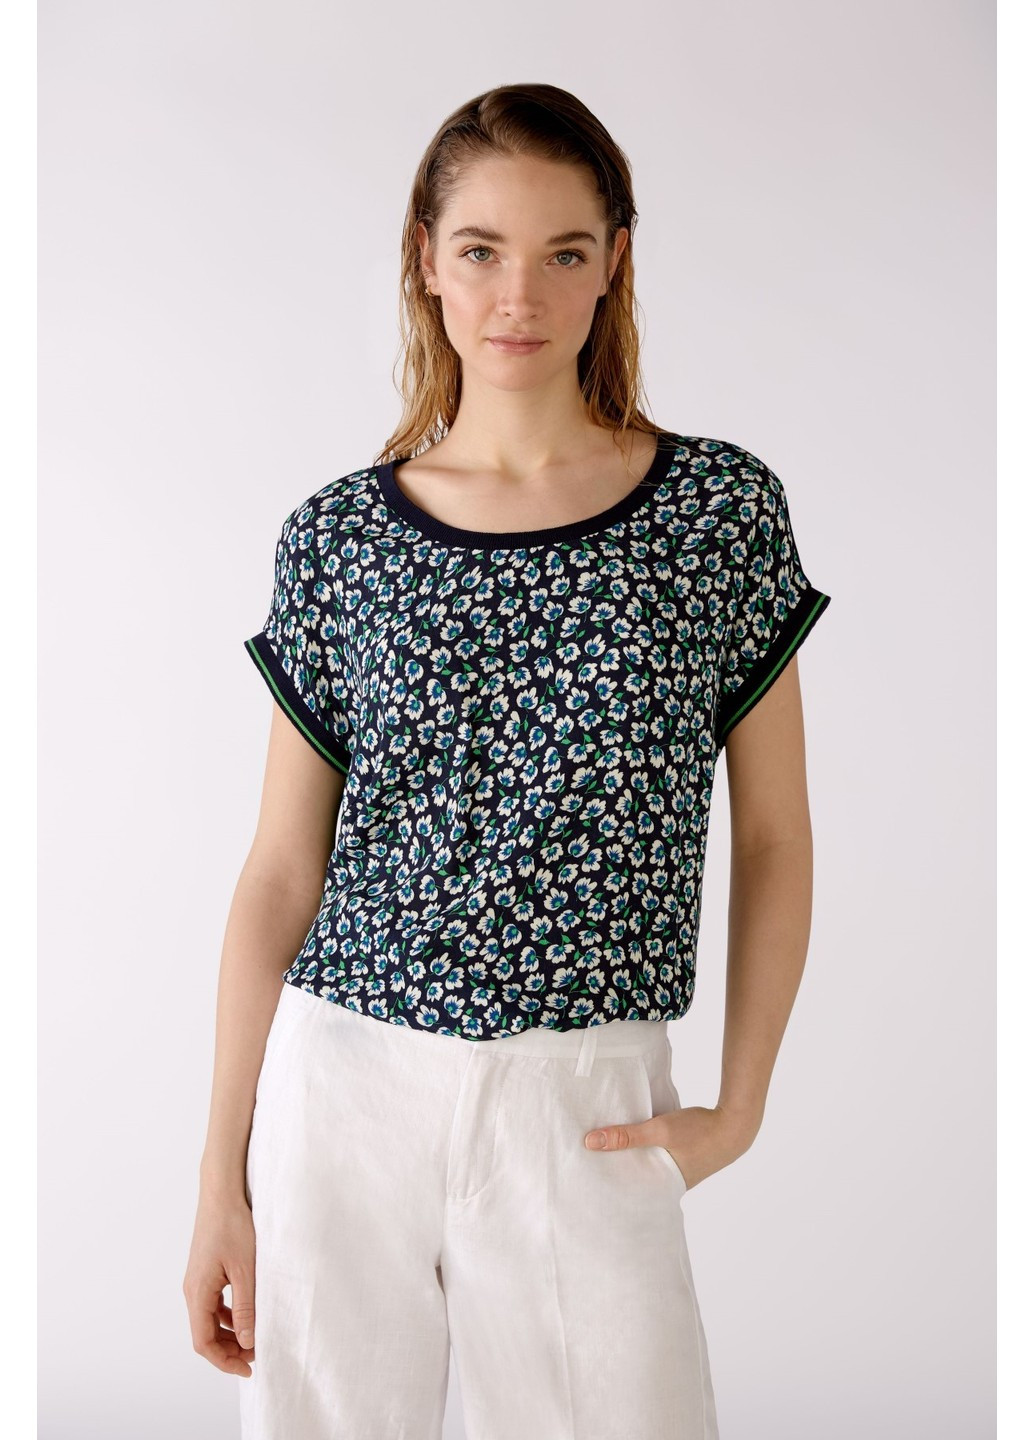 Комбинированная женская блуза разные цвета на запах Oui